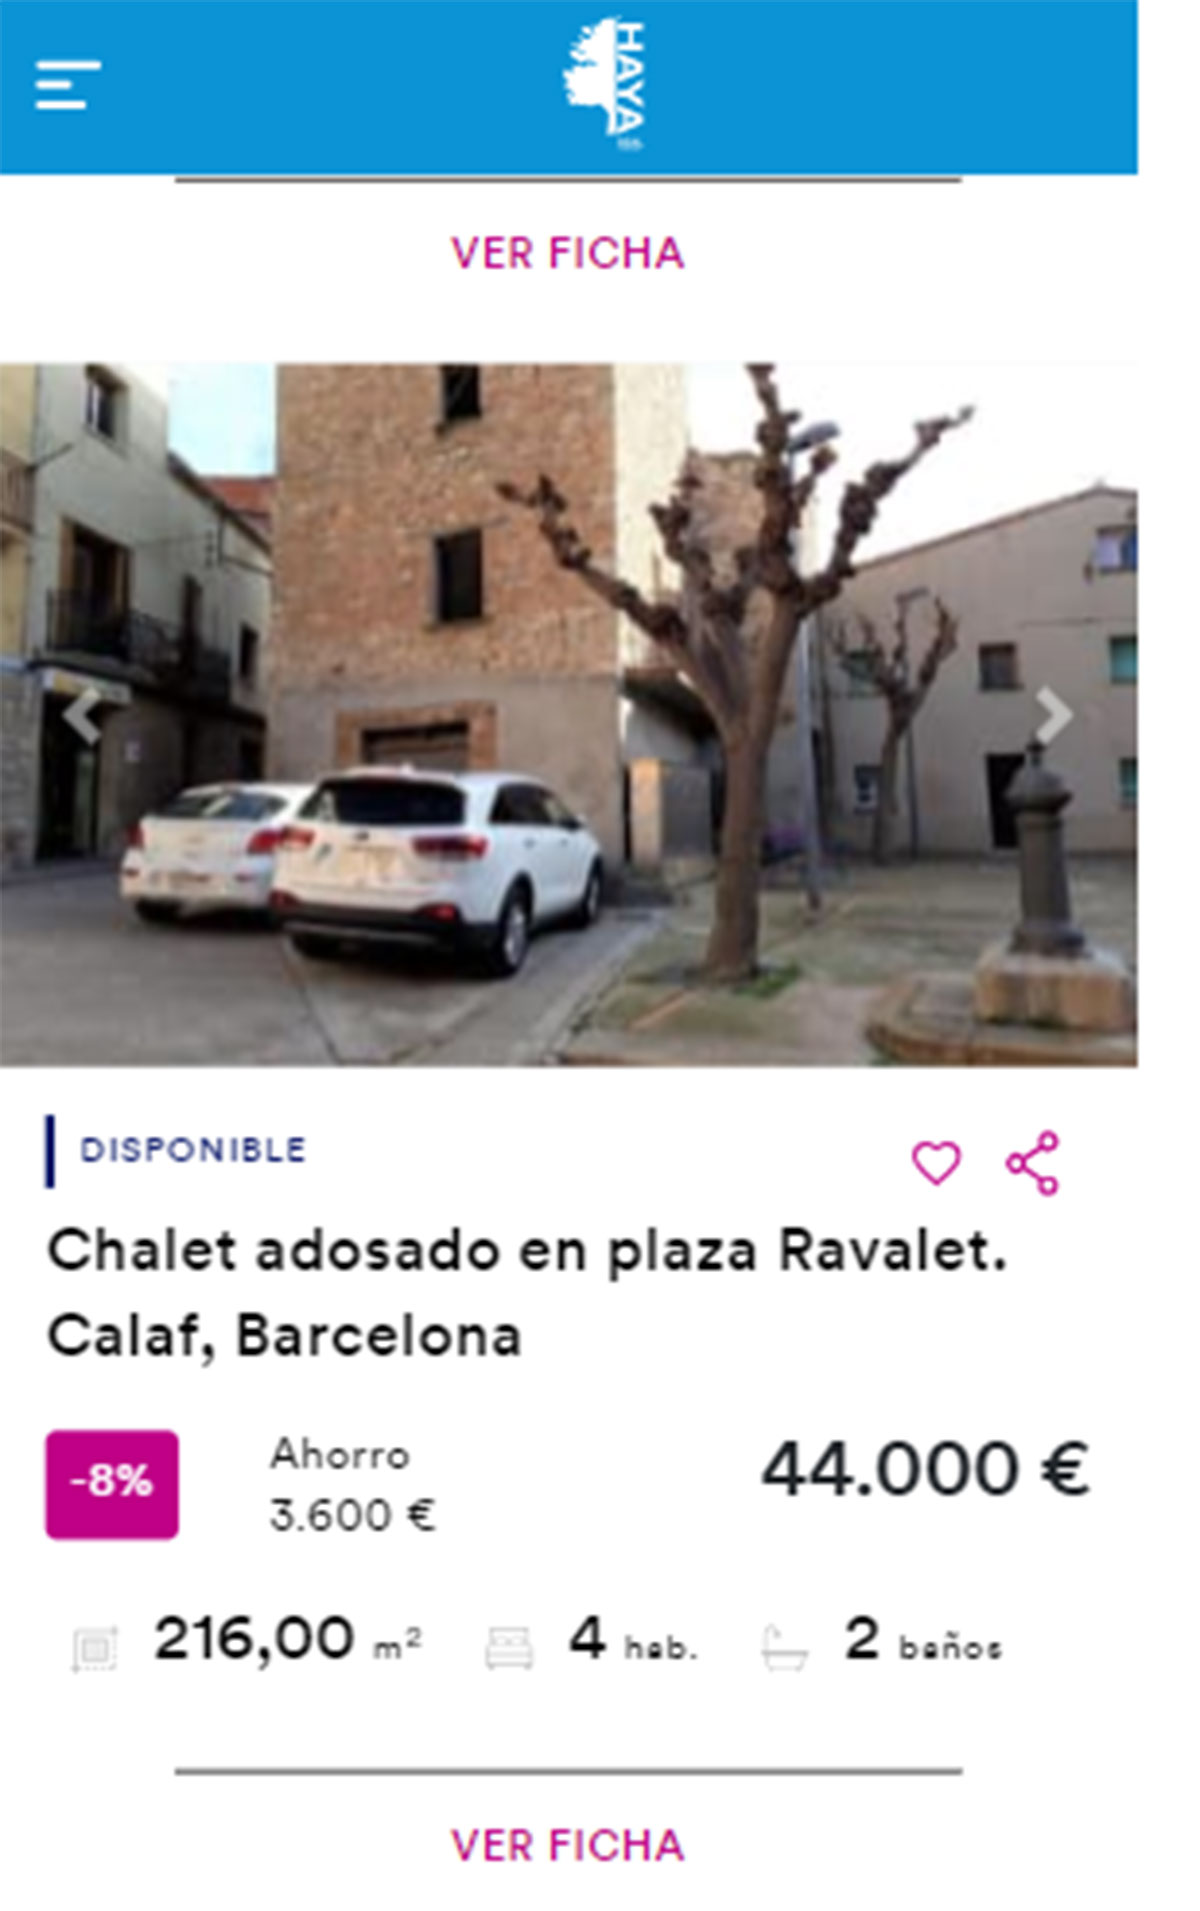 Piso en Barcelona por 44.000 euros